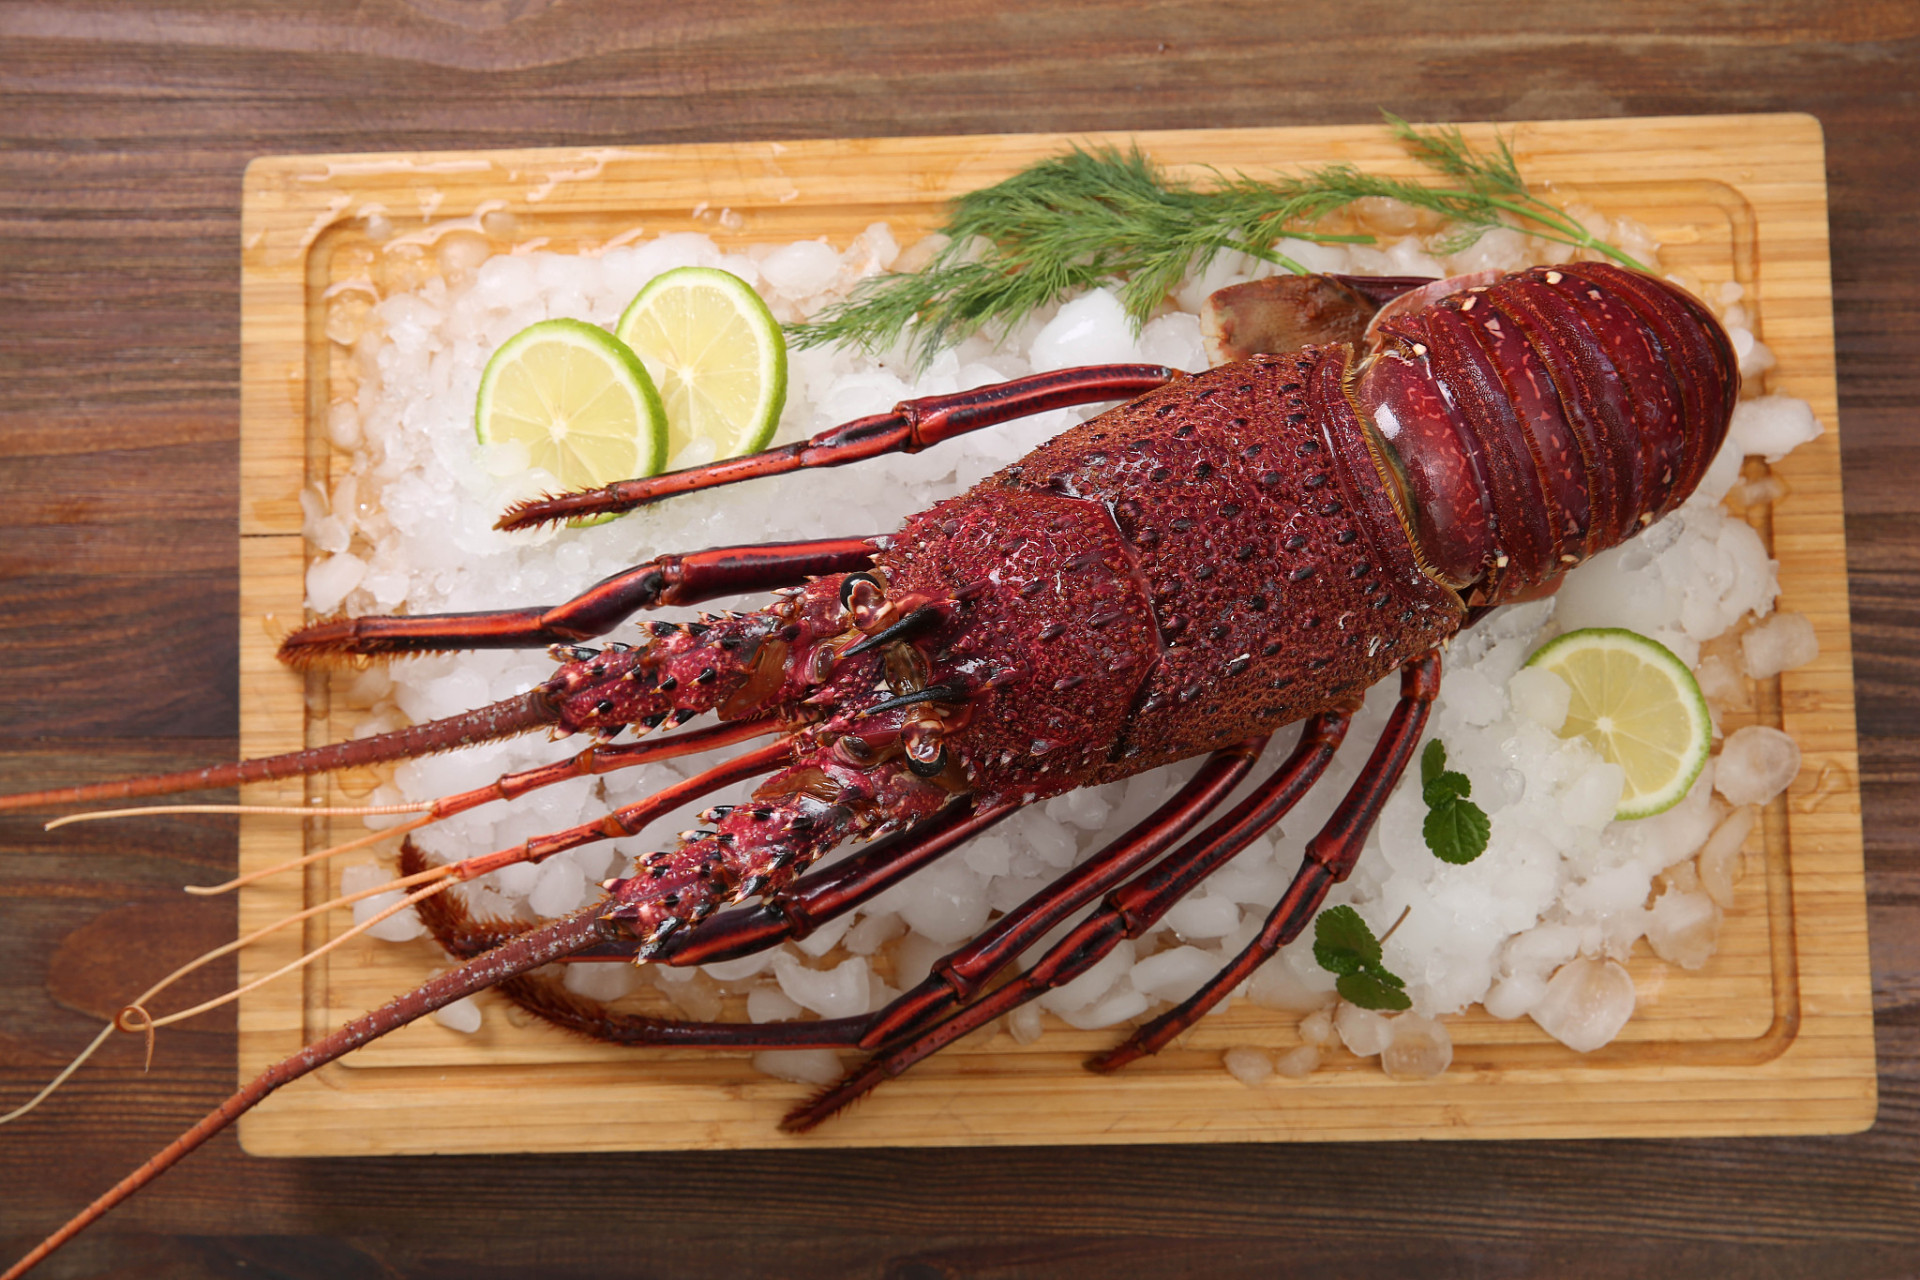 澳洲大龙虾是一道高级海鲜美食,通过简单的烹饪技巧,可以制作出肉质鲜